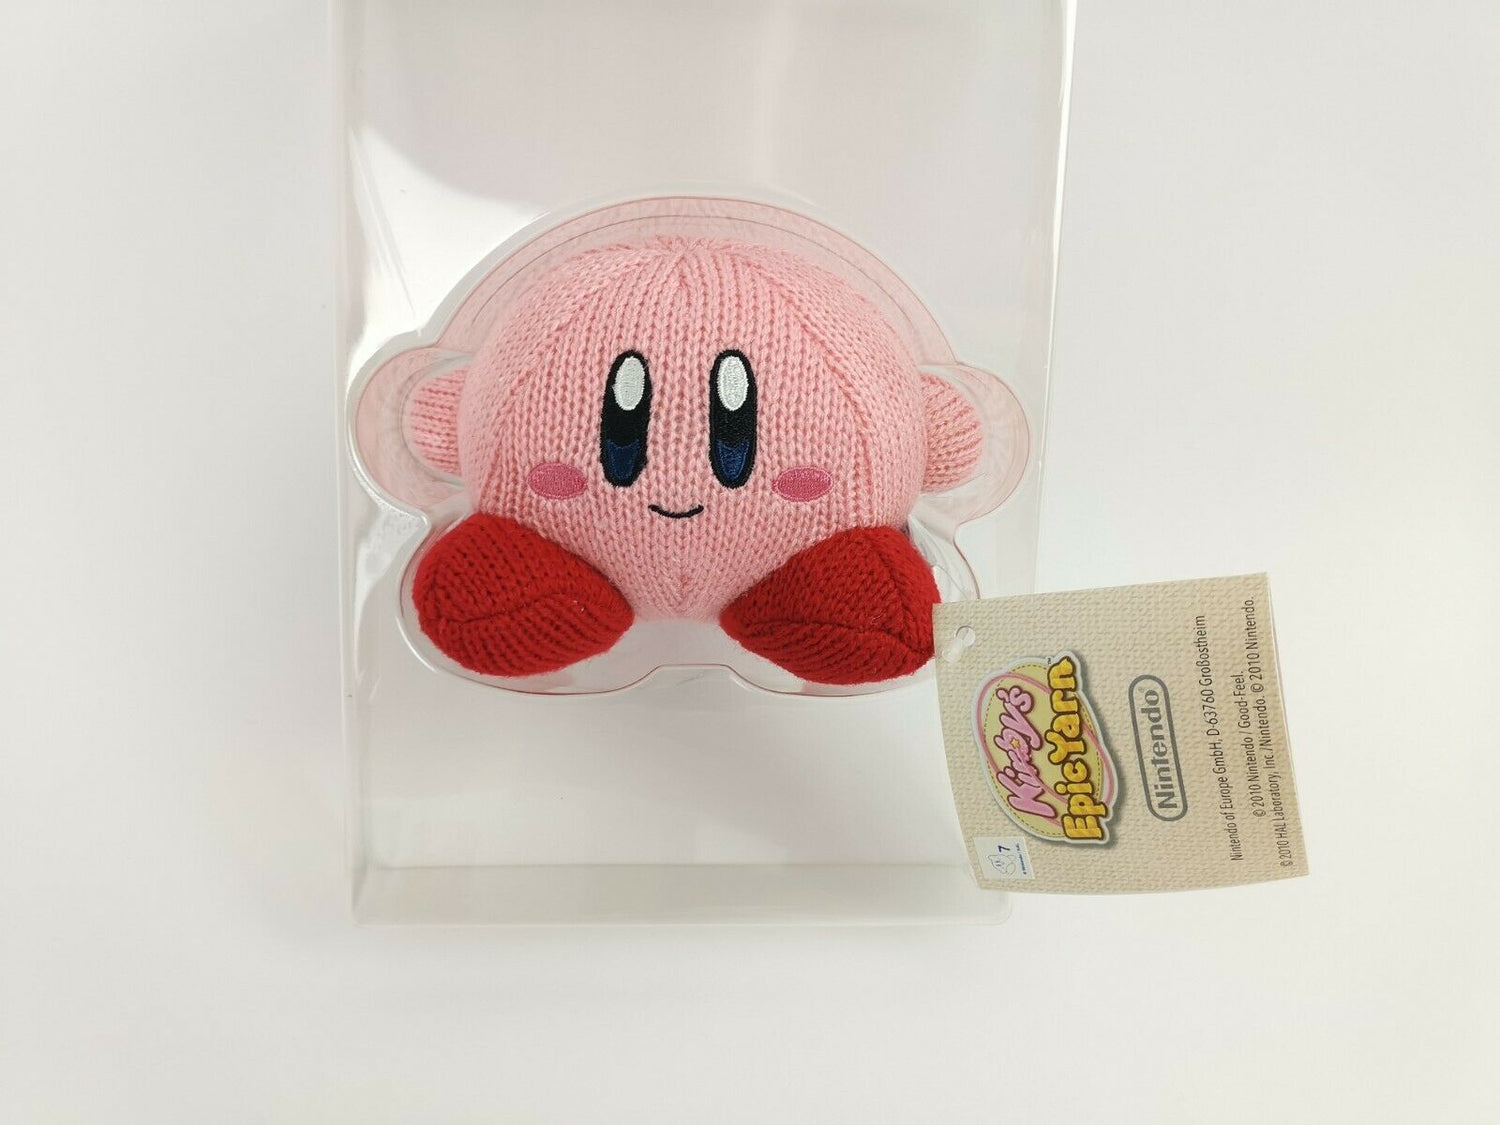 Strick Kirby - Vorbestellung zu Kirby und das magische Garn | Nintendo Wii |